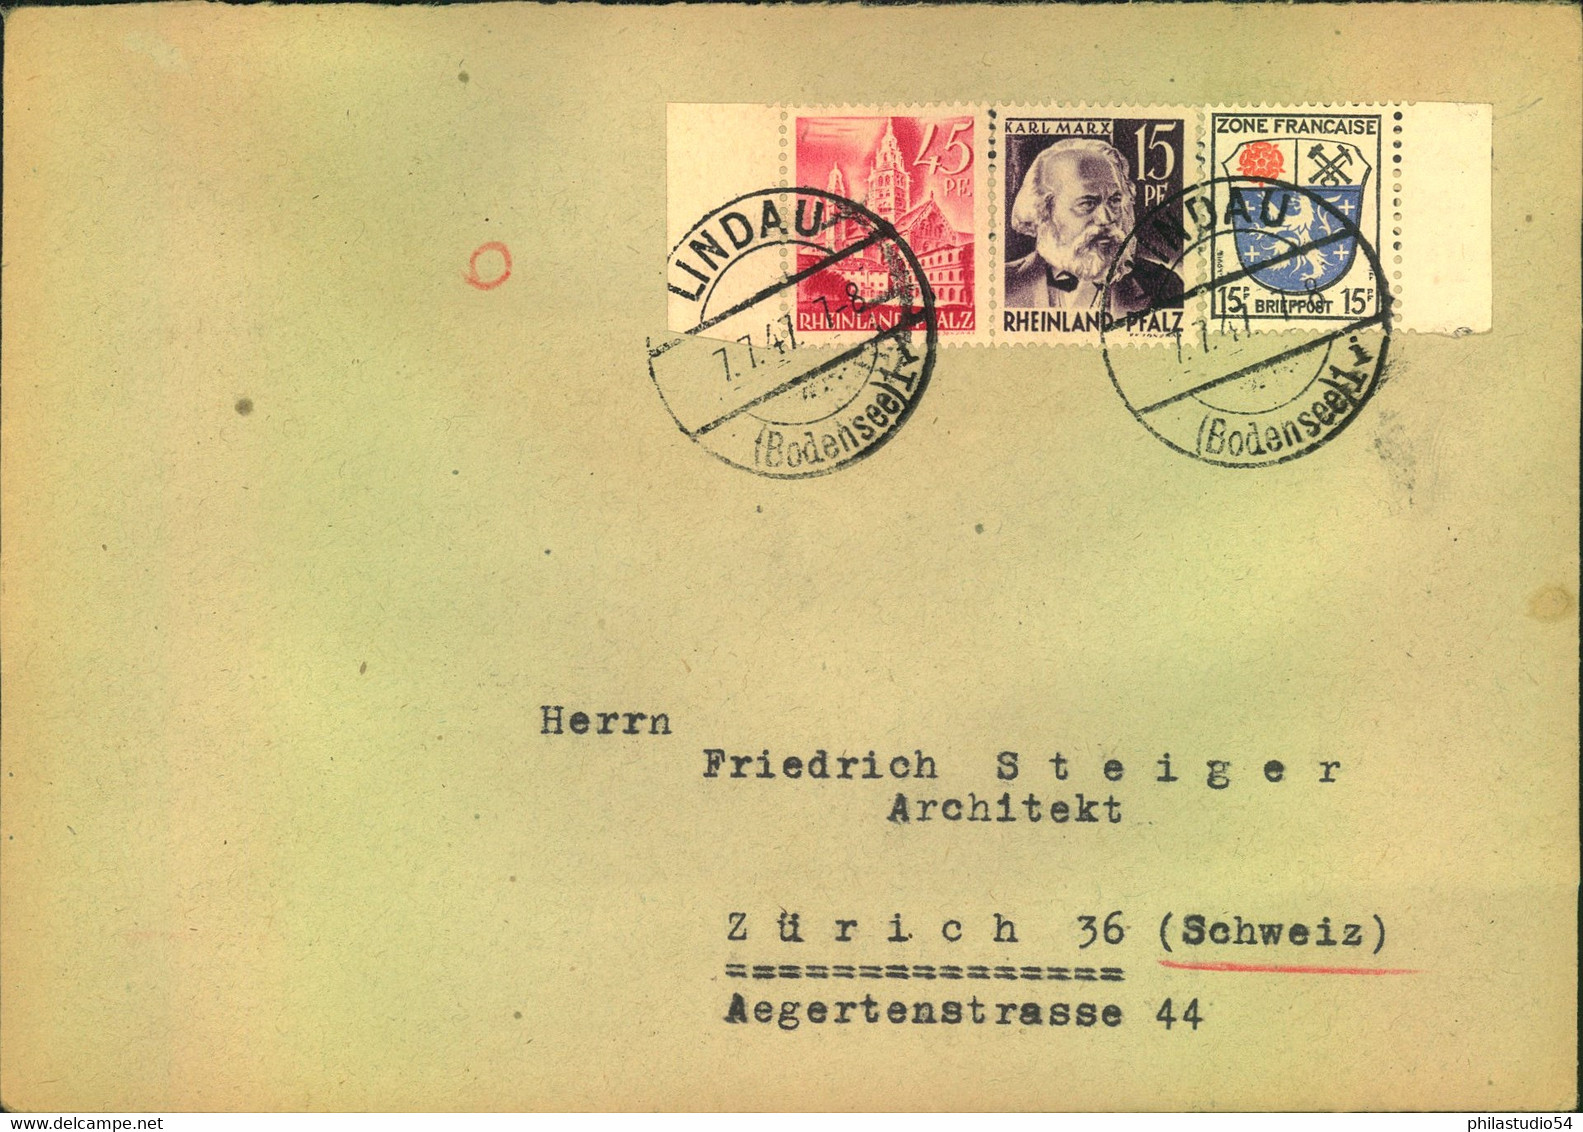 1946/47, 10 Auslandsbriefe mit portogerecht mit 75 Pfg., viele MiF Allg. Asbage - Länder